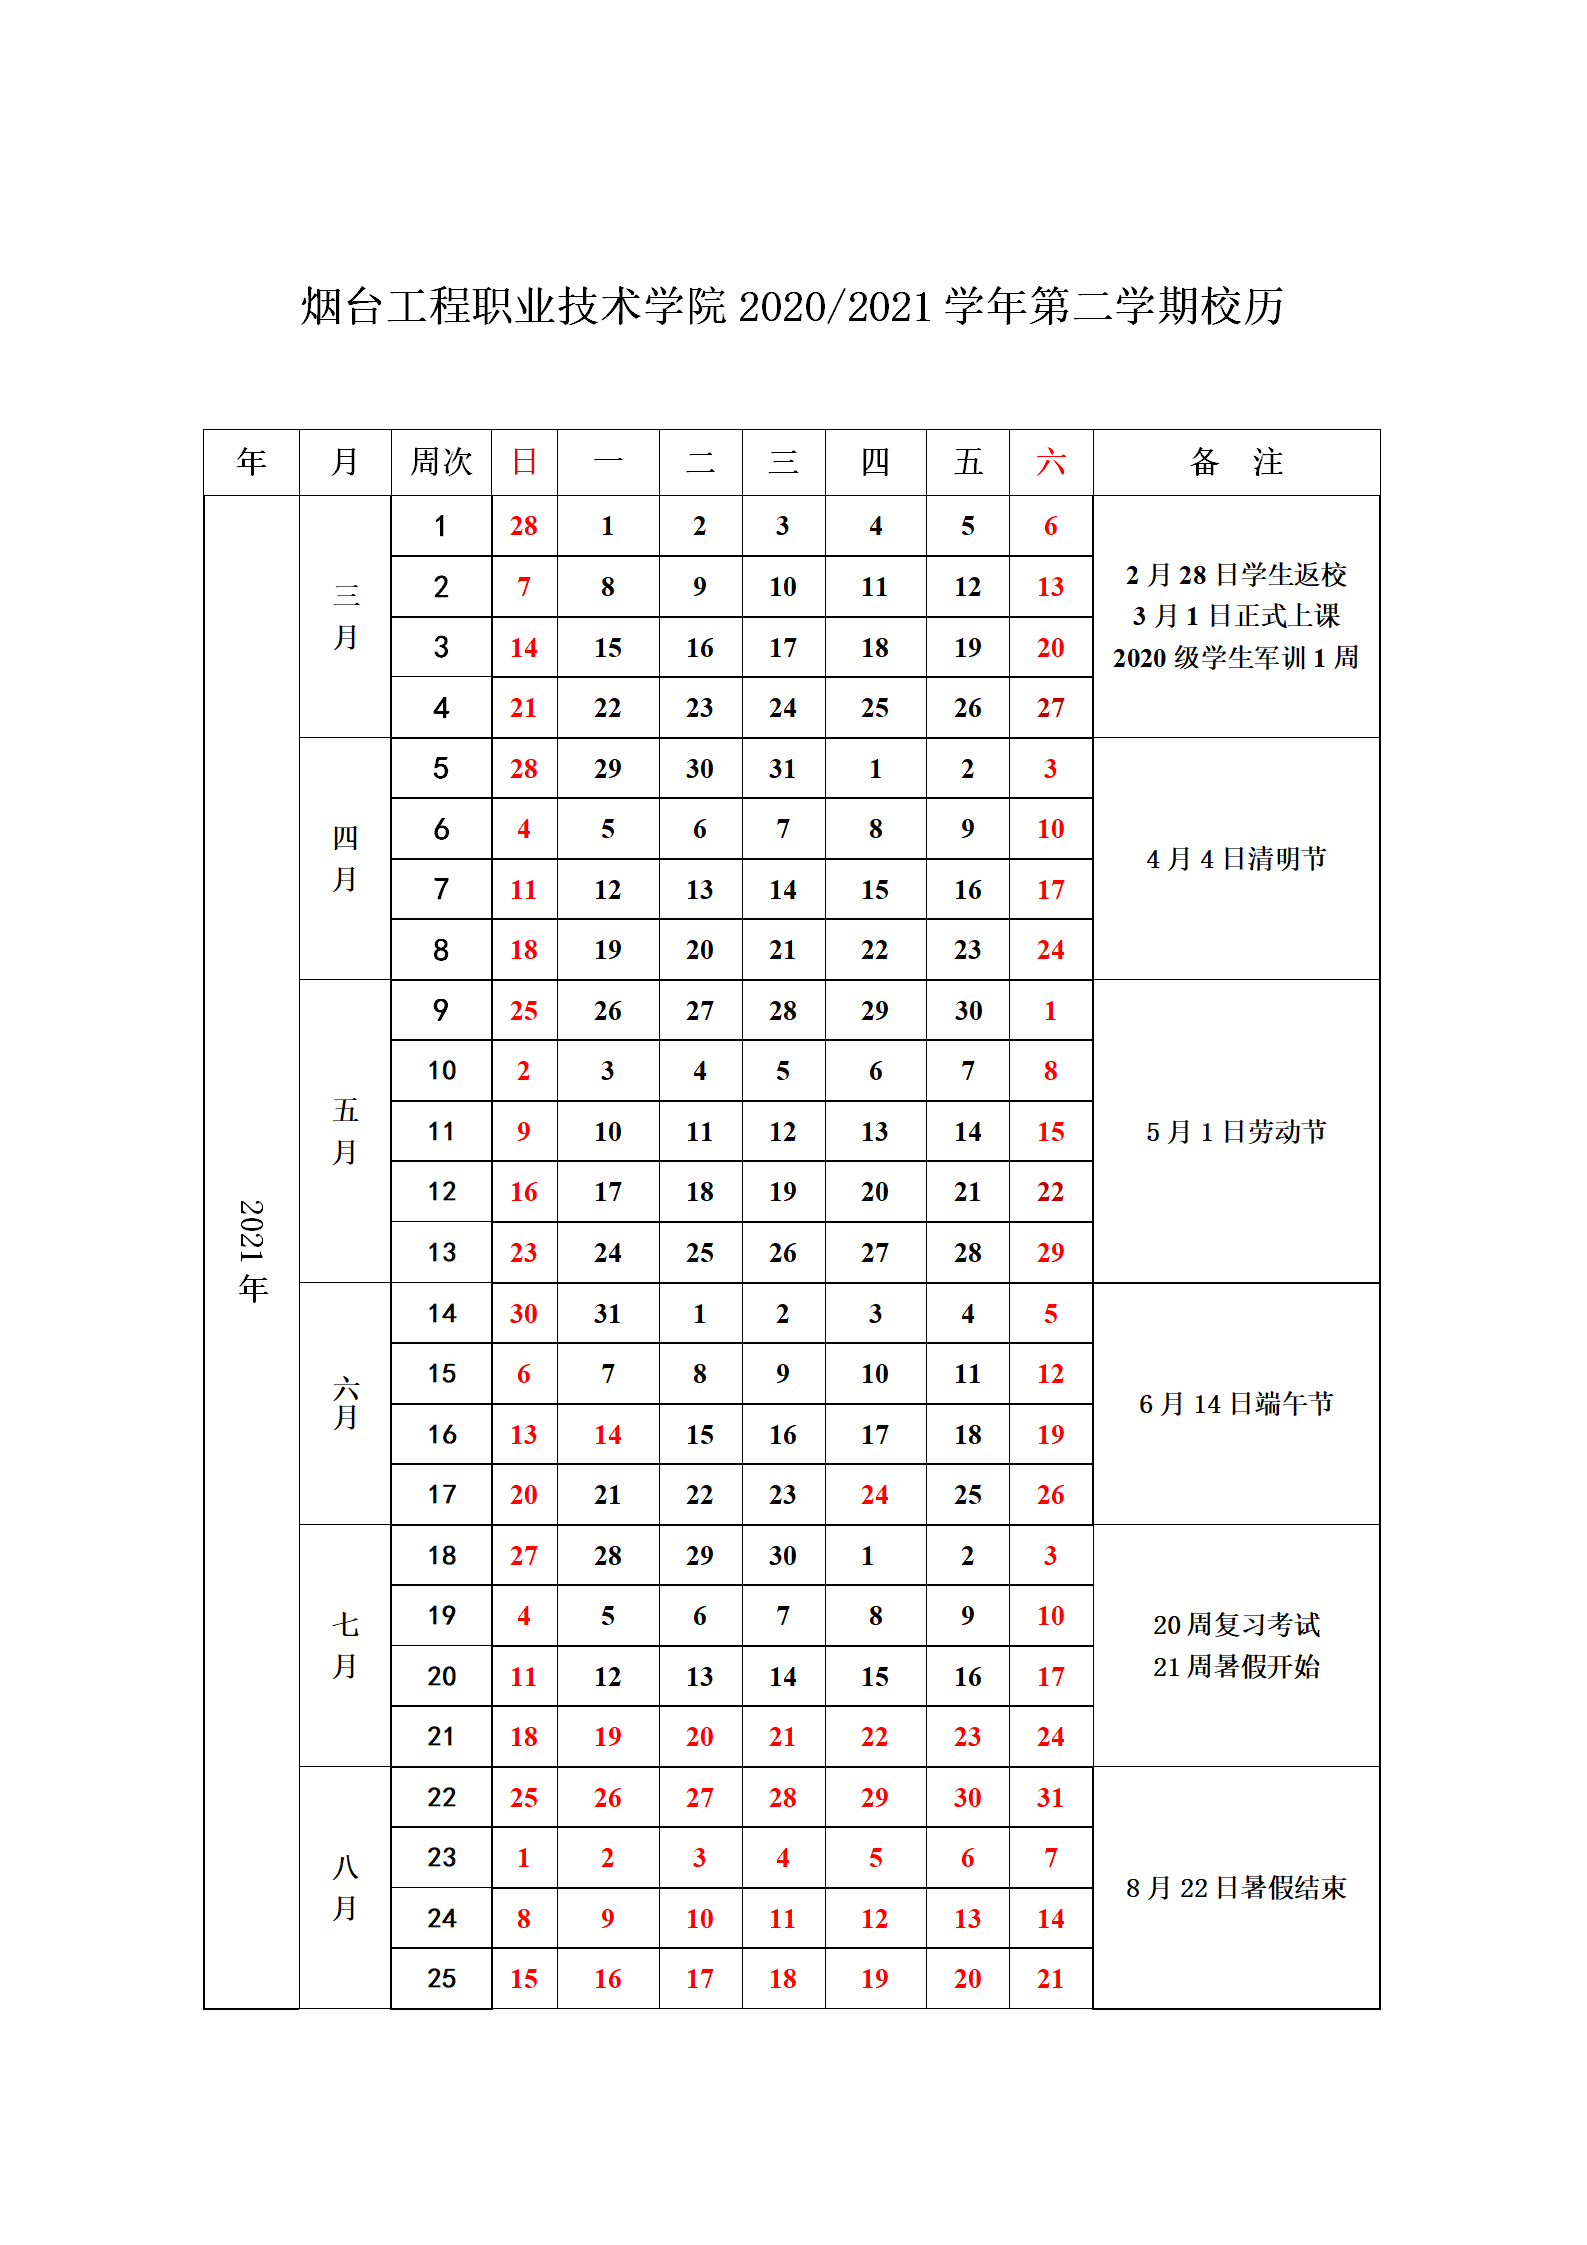 44118太阳成城集团2020--2021学年校历(1)_02.png